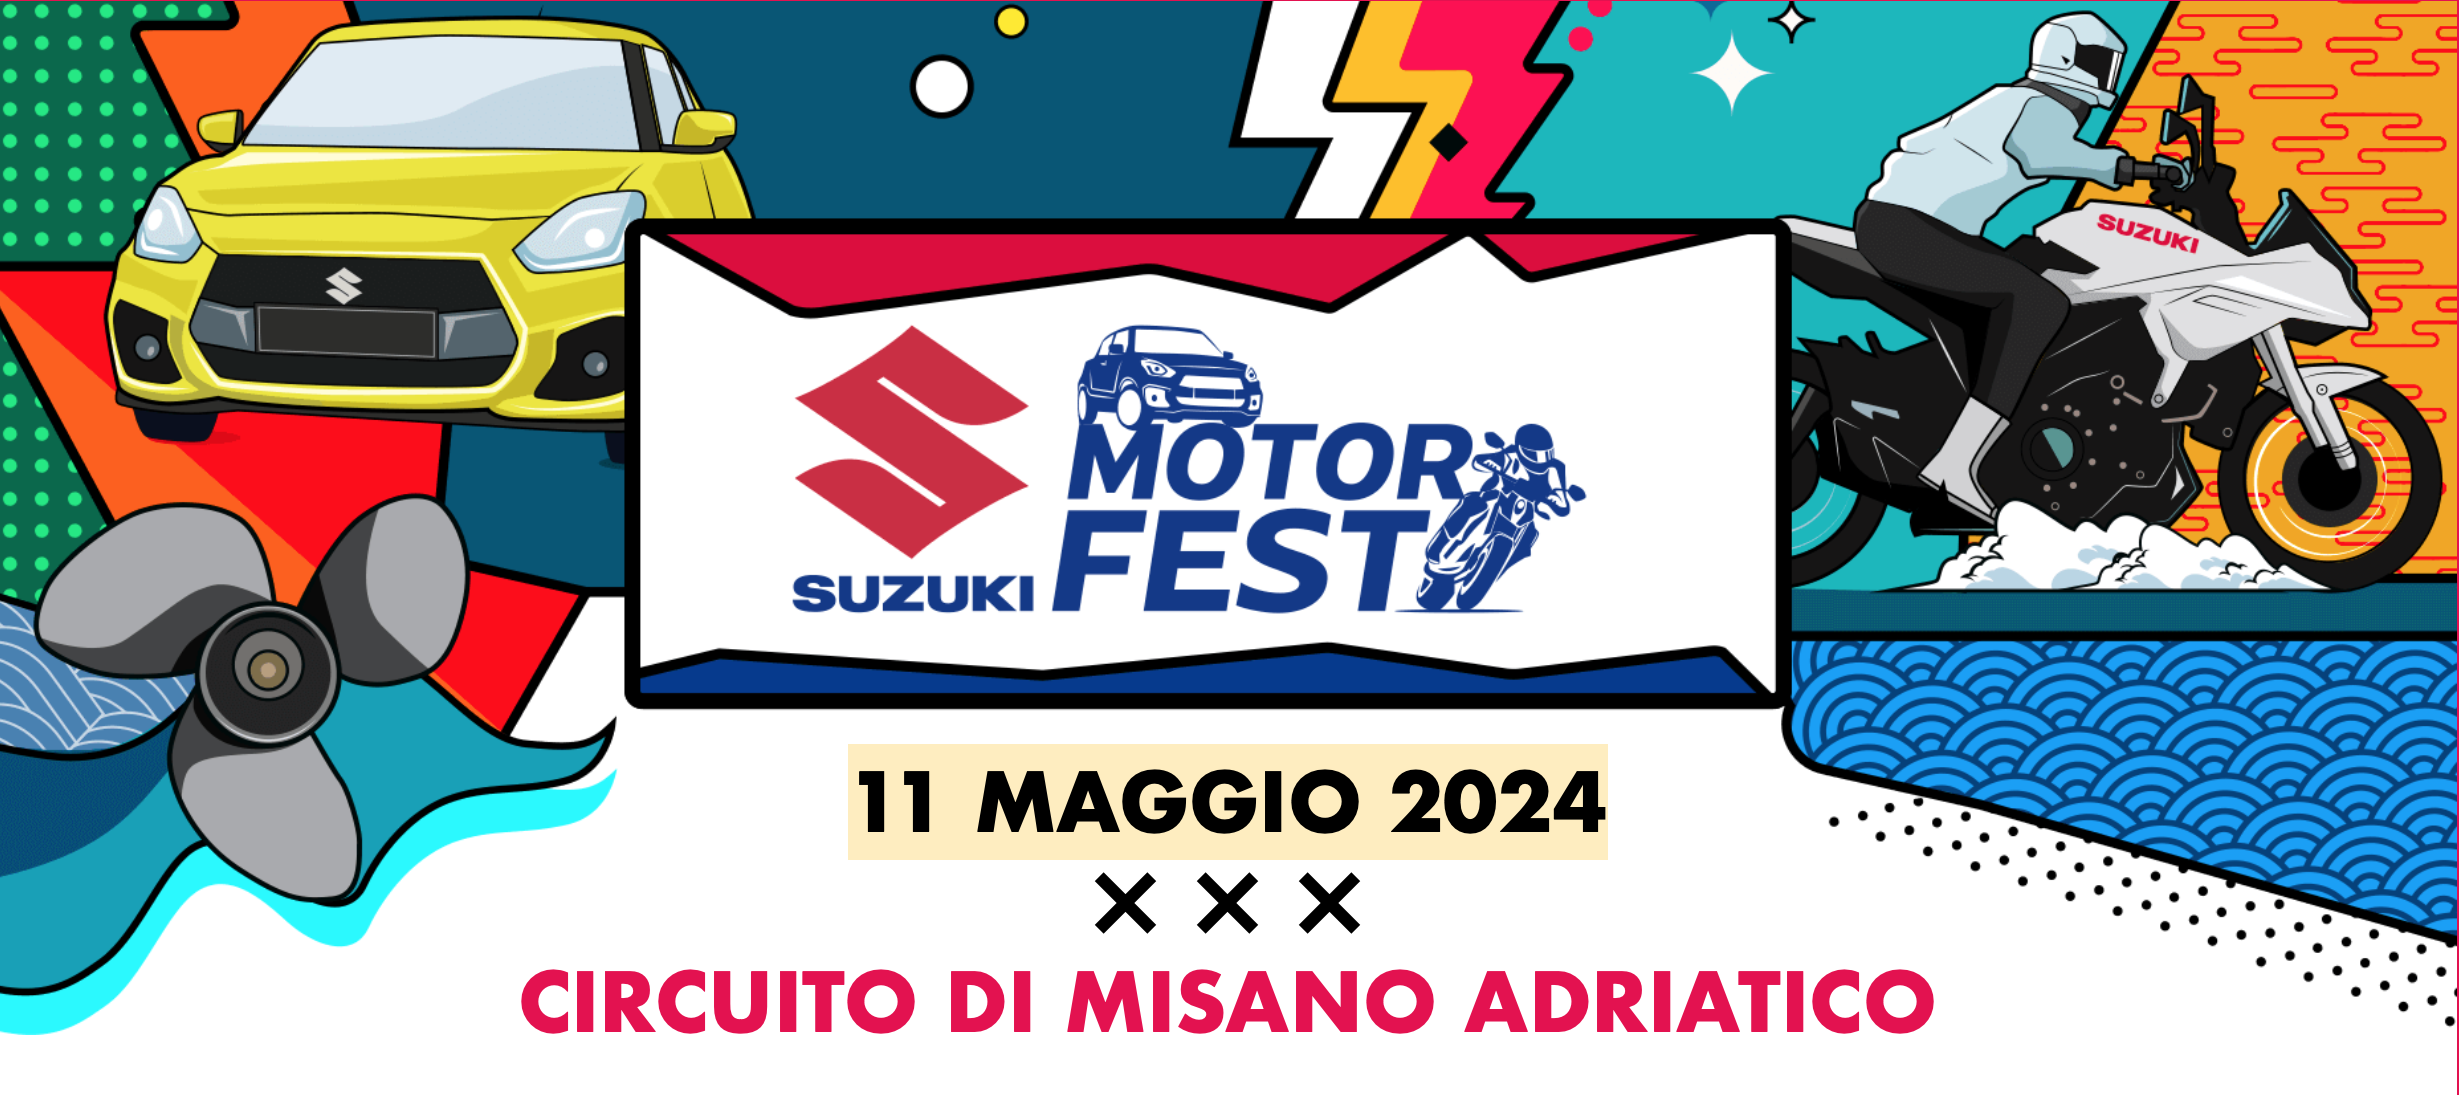 Suzuki Motor Fest